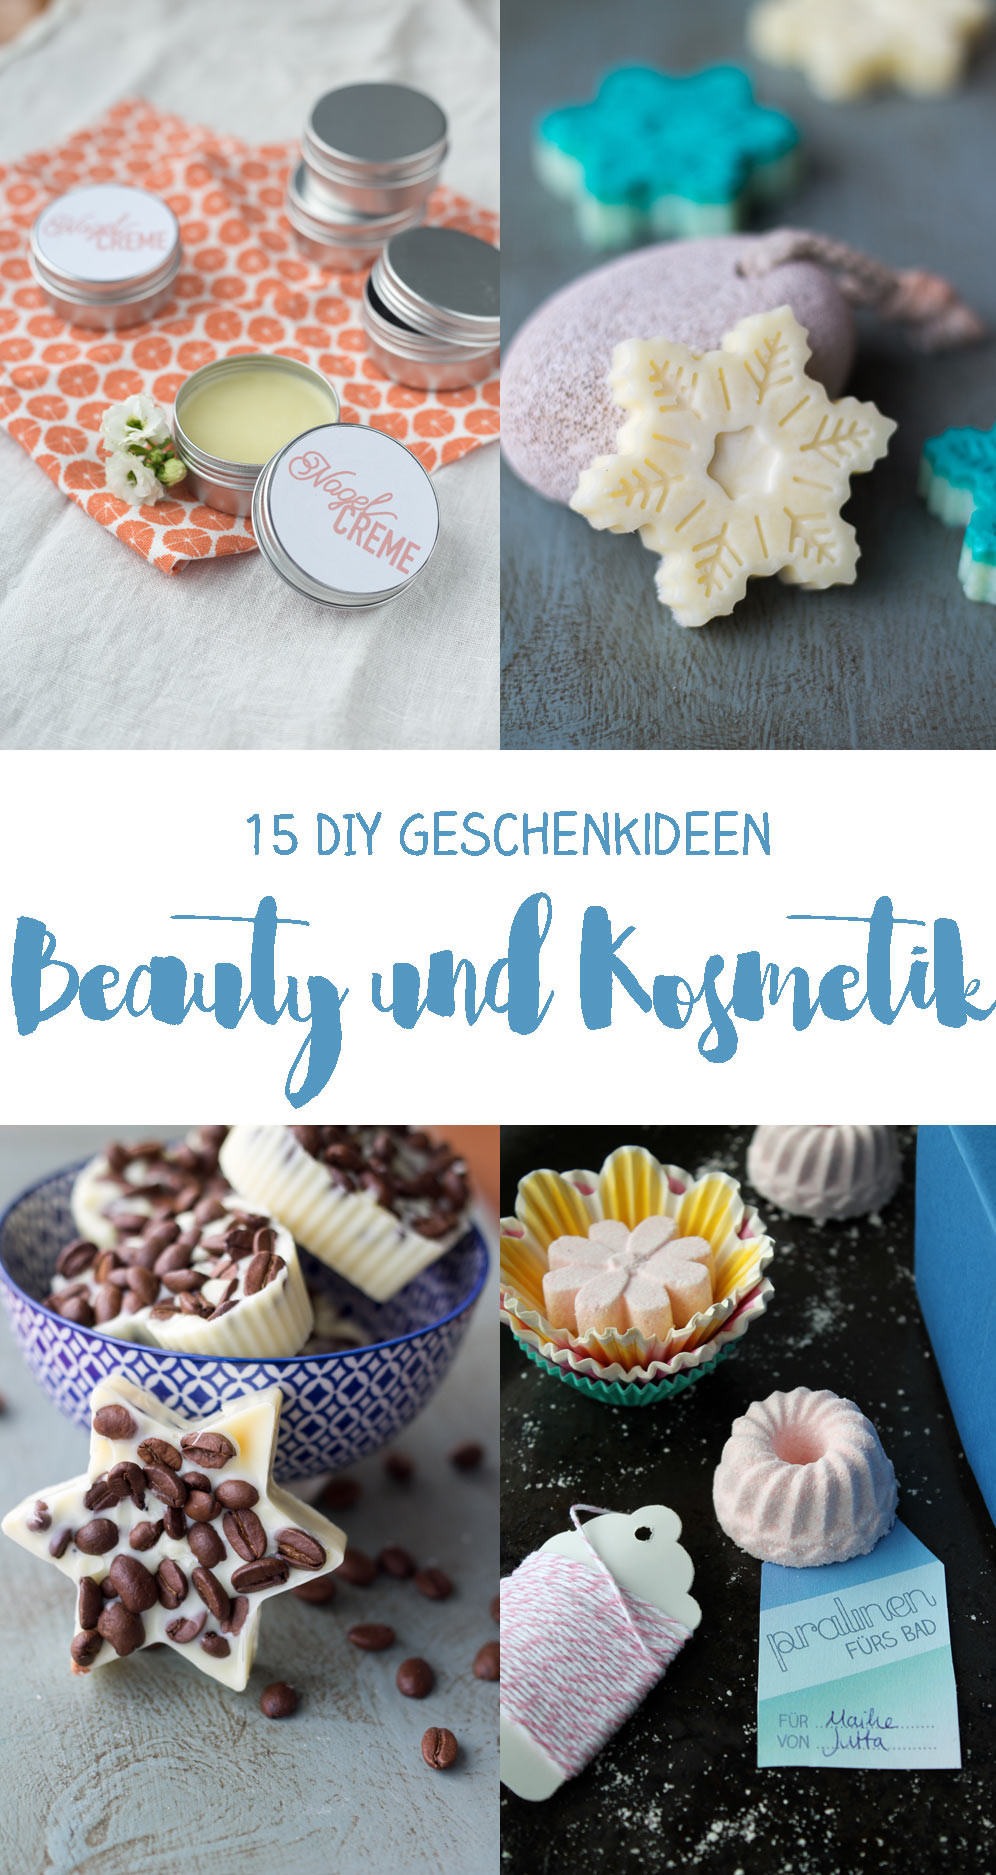 Diy Geschenke
 15 DIY Kosmetik Geschenkideen zum Selbermachen